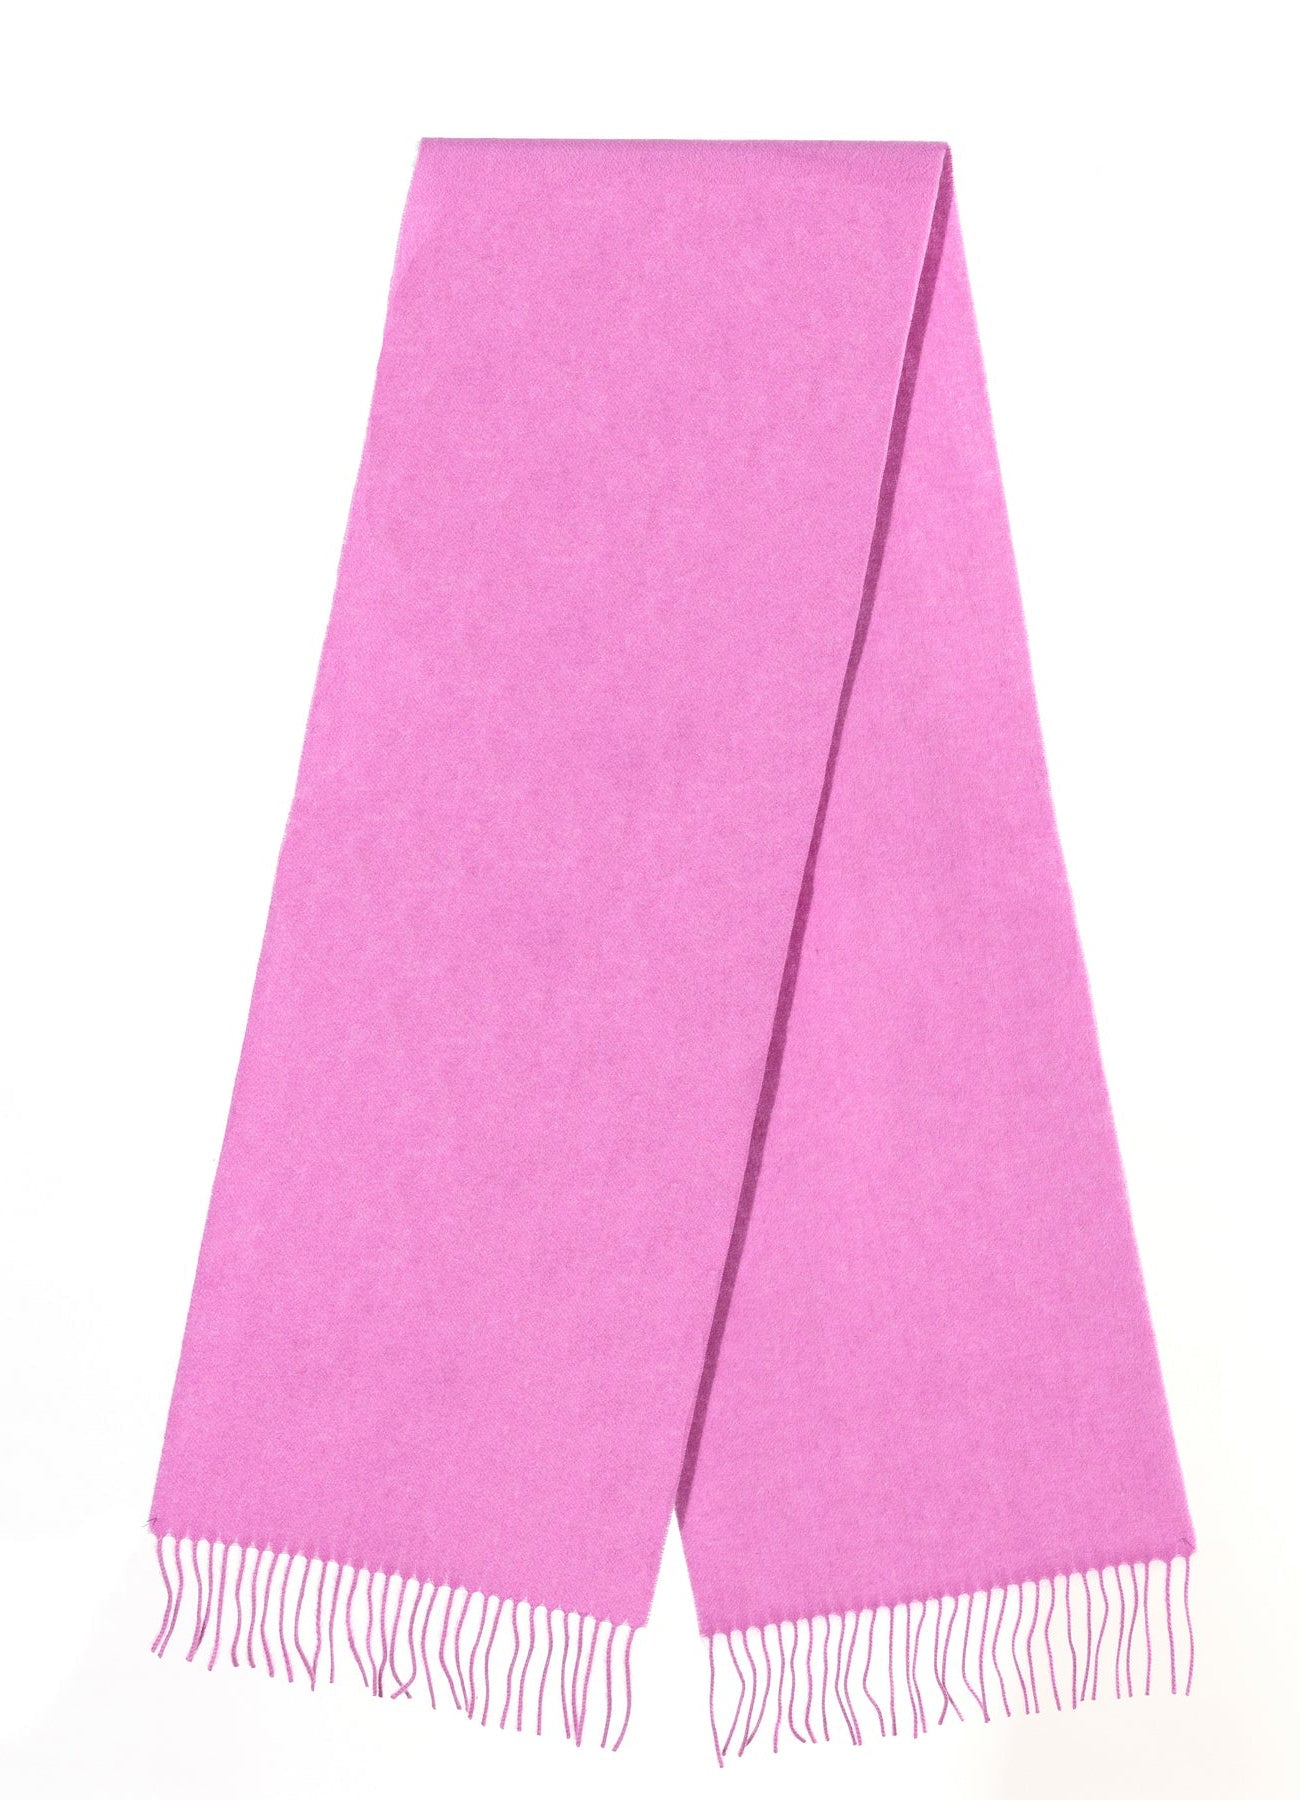 プレーンダークピンクスカーフ 100% ピュアラムウール